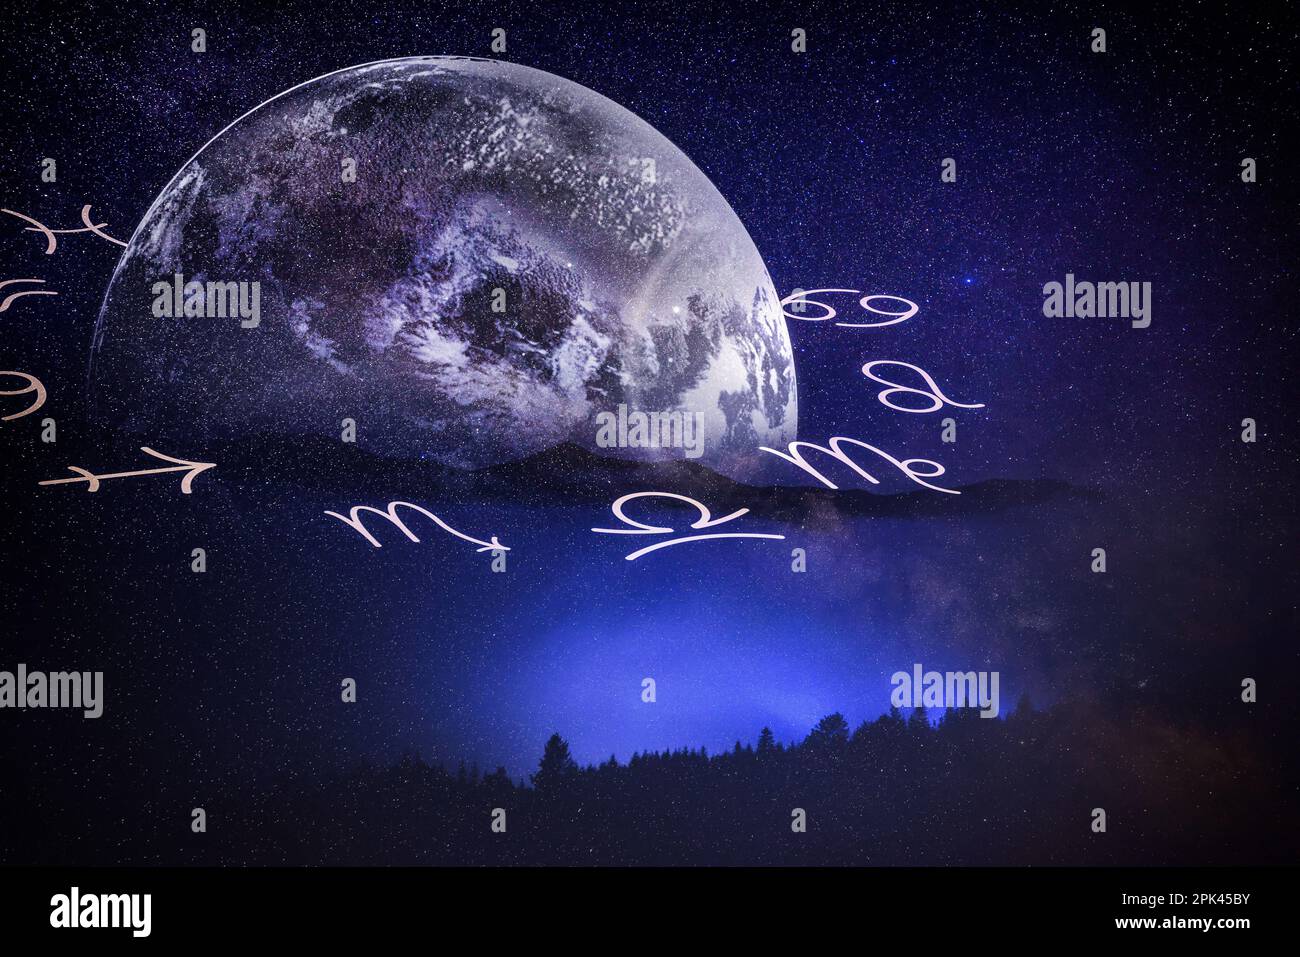 Ruota zodiacale con segni astrologici e terra nel cielo notturno, illustrazione Foto Stock